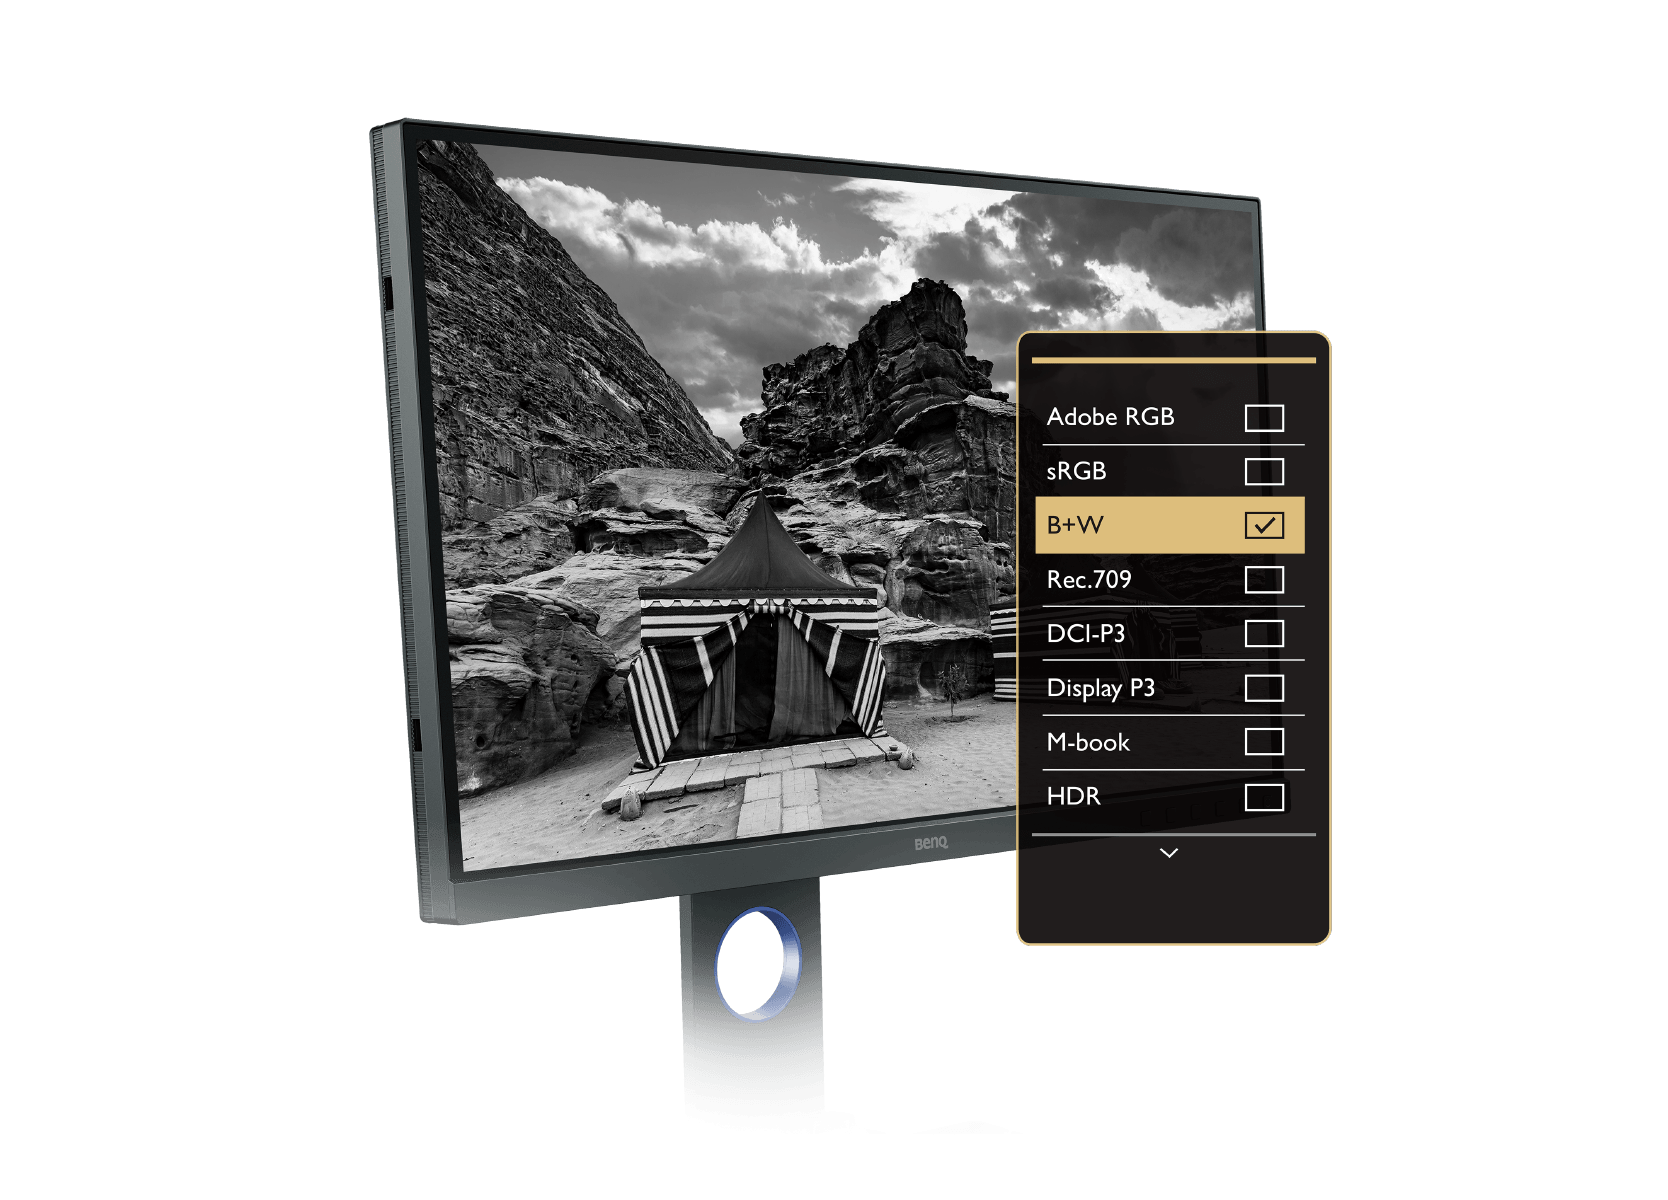 Il Photographer Monitor BenQ fornisce una modalità avanzata in bianco e nero per visualizzare, prima dell’editing, l’anteprima delle foto a colori in una delle tre impostazioni preimpostate in bianco e nero.